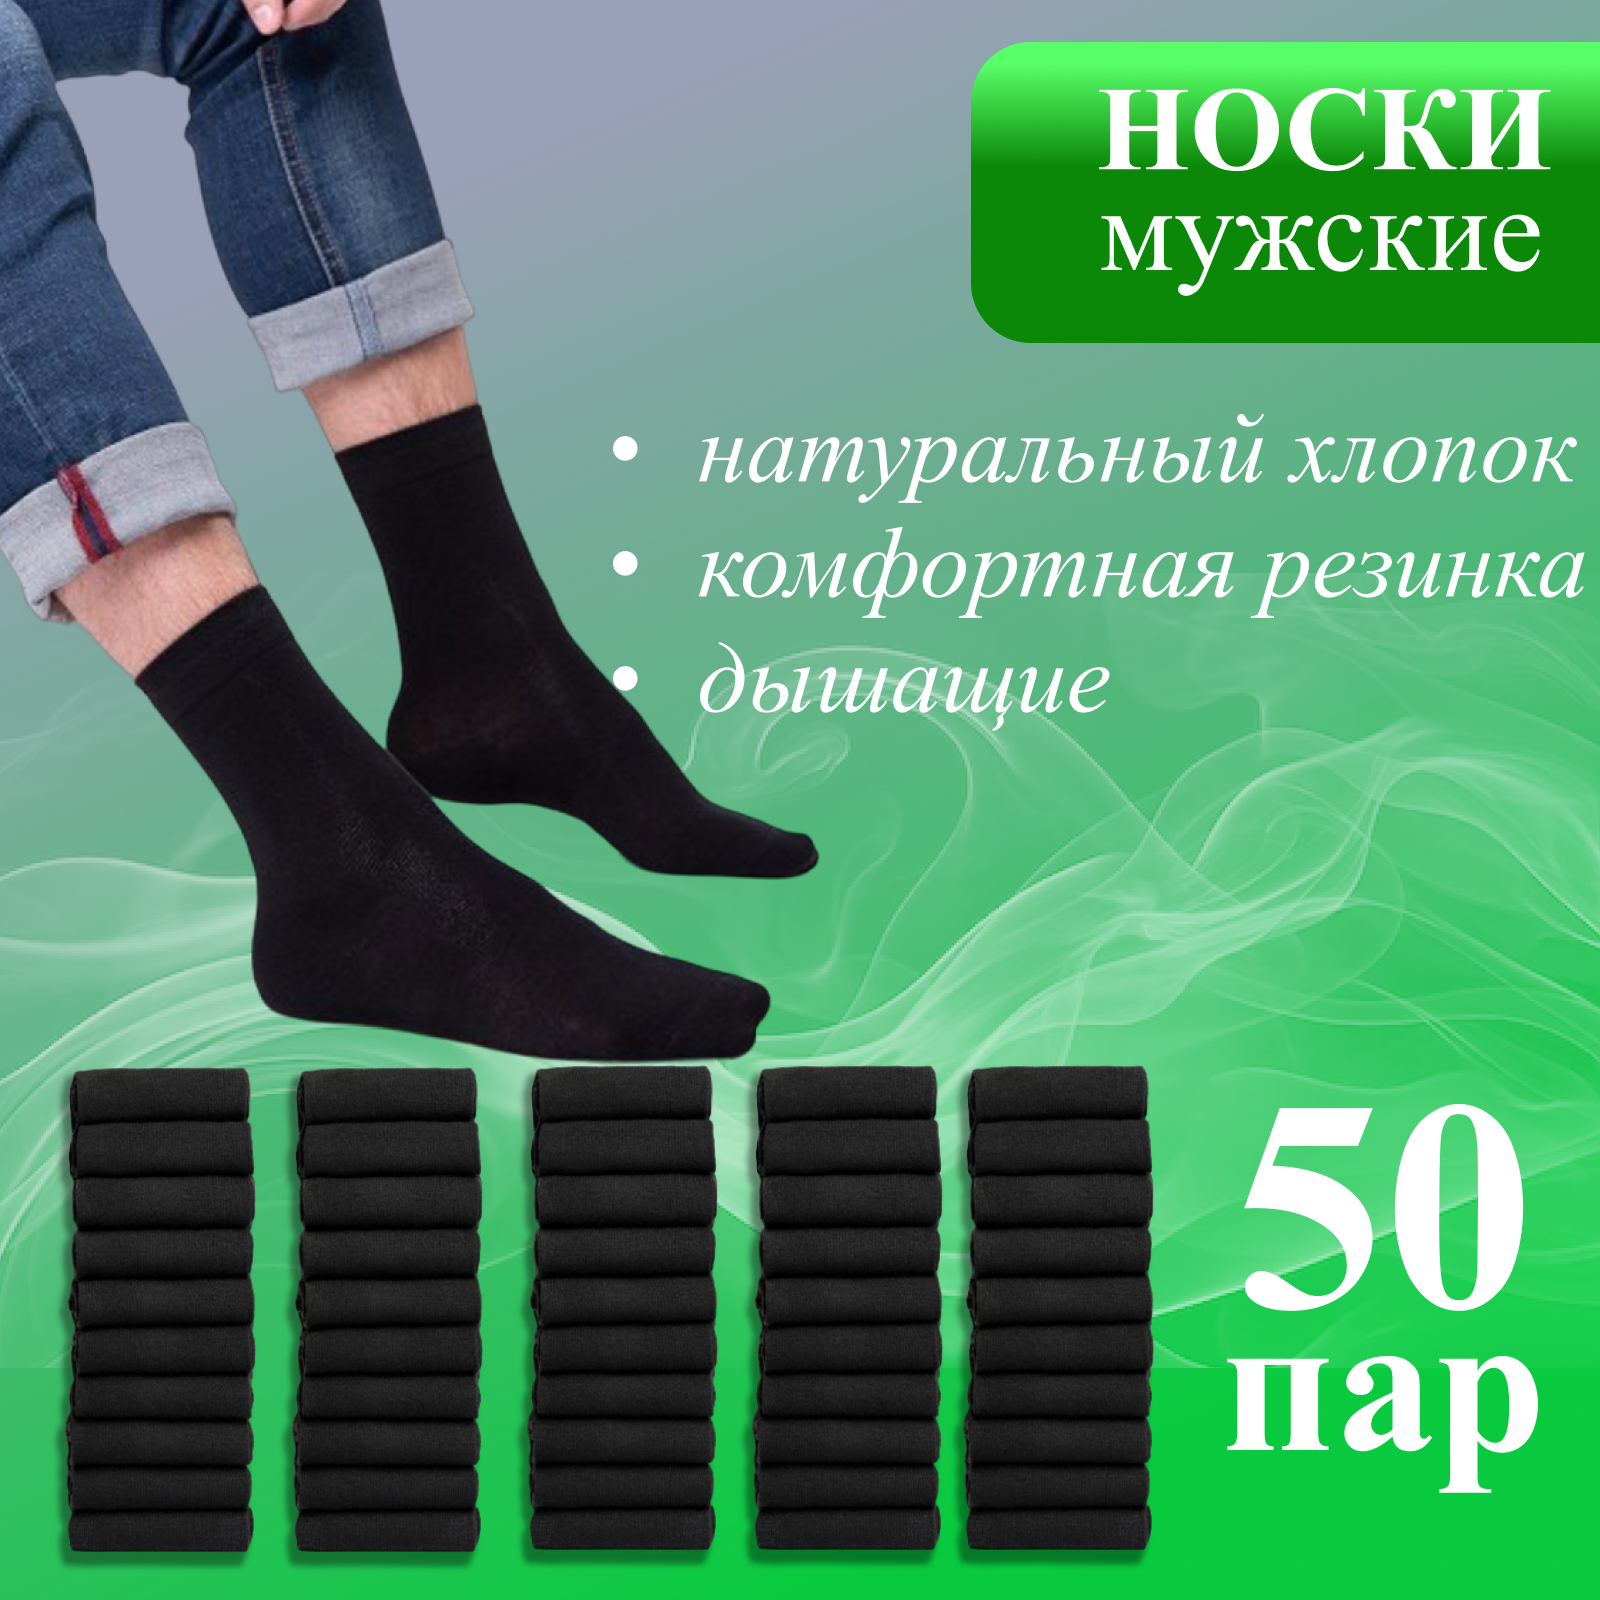 Комплект носков мужских BaDo SCH_50 черных 31, 50 пар